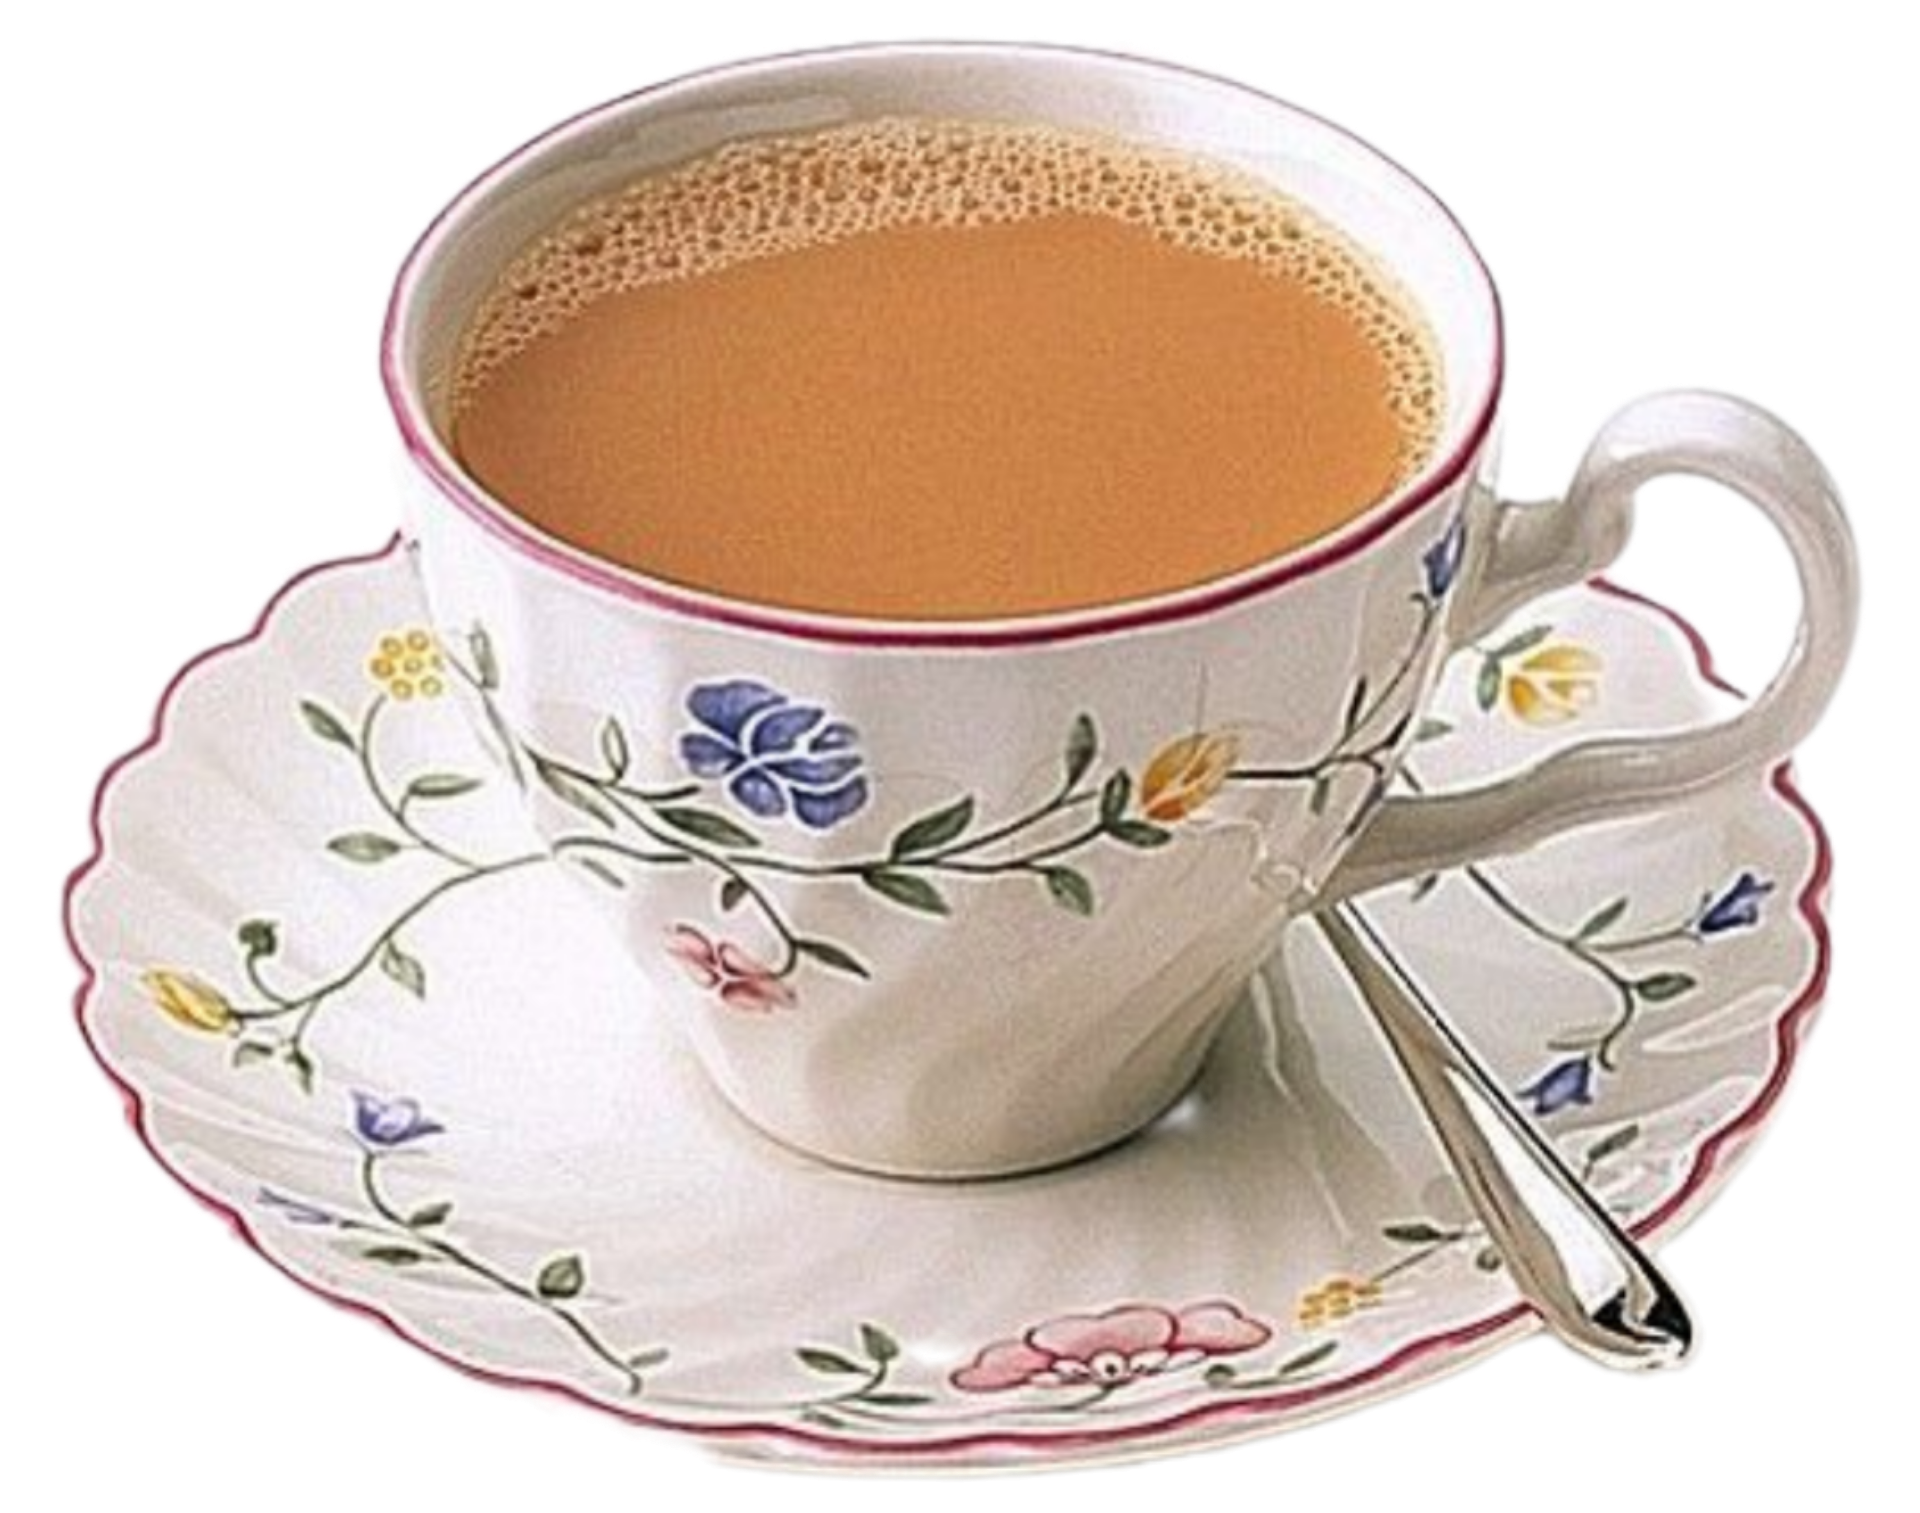 A cup of liber tea. Чай с молоком. Масала чай. Масала в чашке. Карак чай.